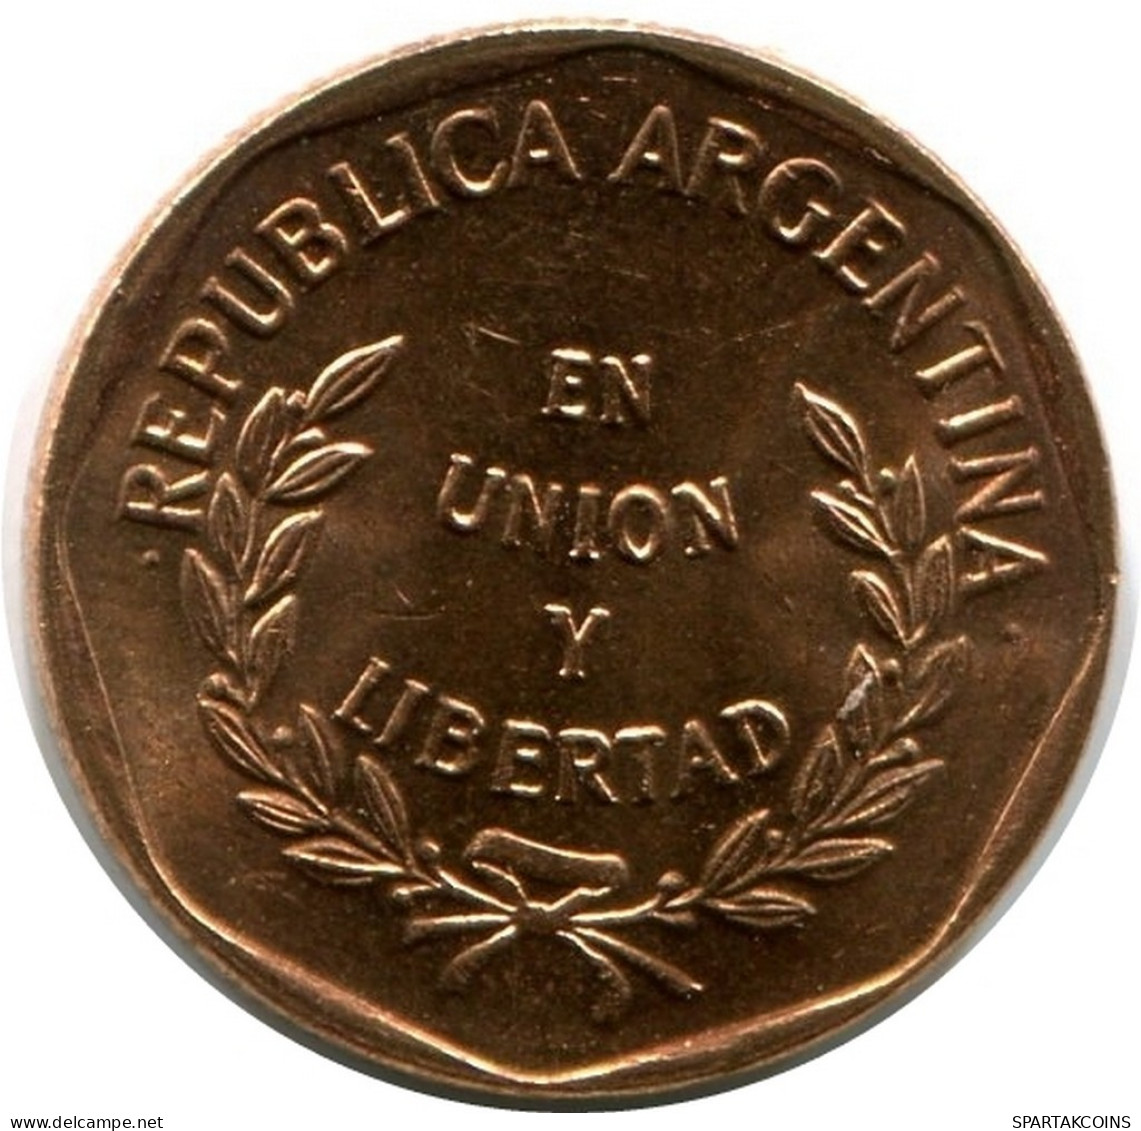 1 CENTAVO 1998 ARGENTINA Coin UNC #M10131.U.A - Argentinië